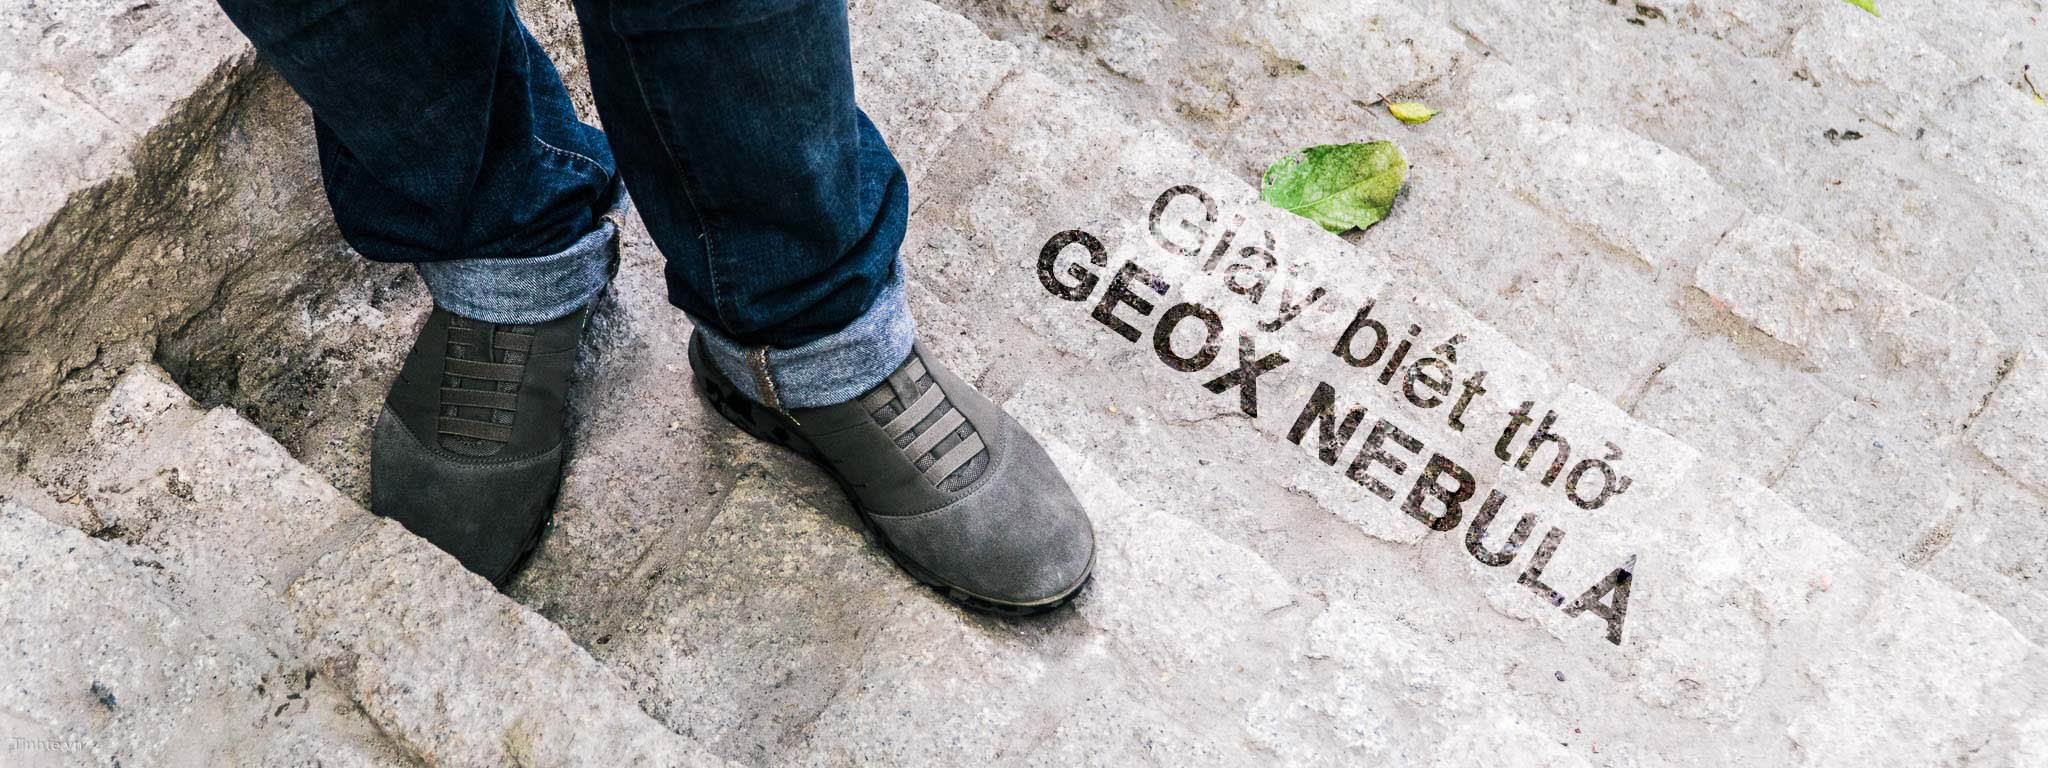 Giày nữ xuất khẩu GIÀY GEOX - MS3879 thời trang, hàng hiệu, vnxk chính hãng  tại HCM